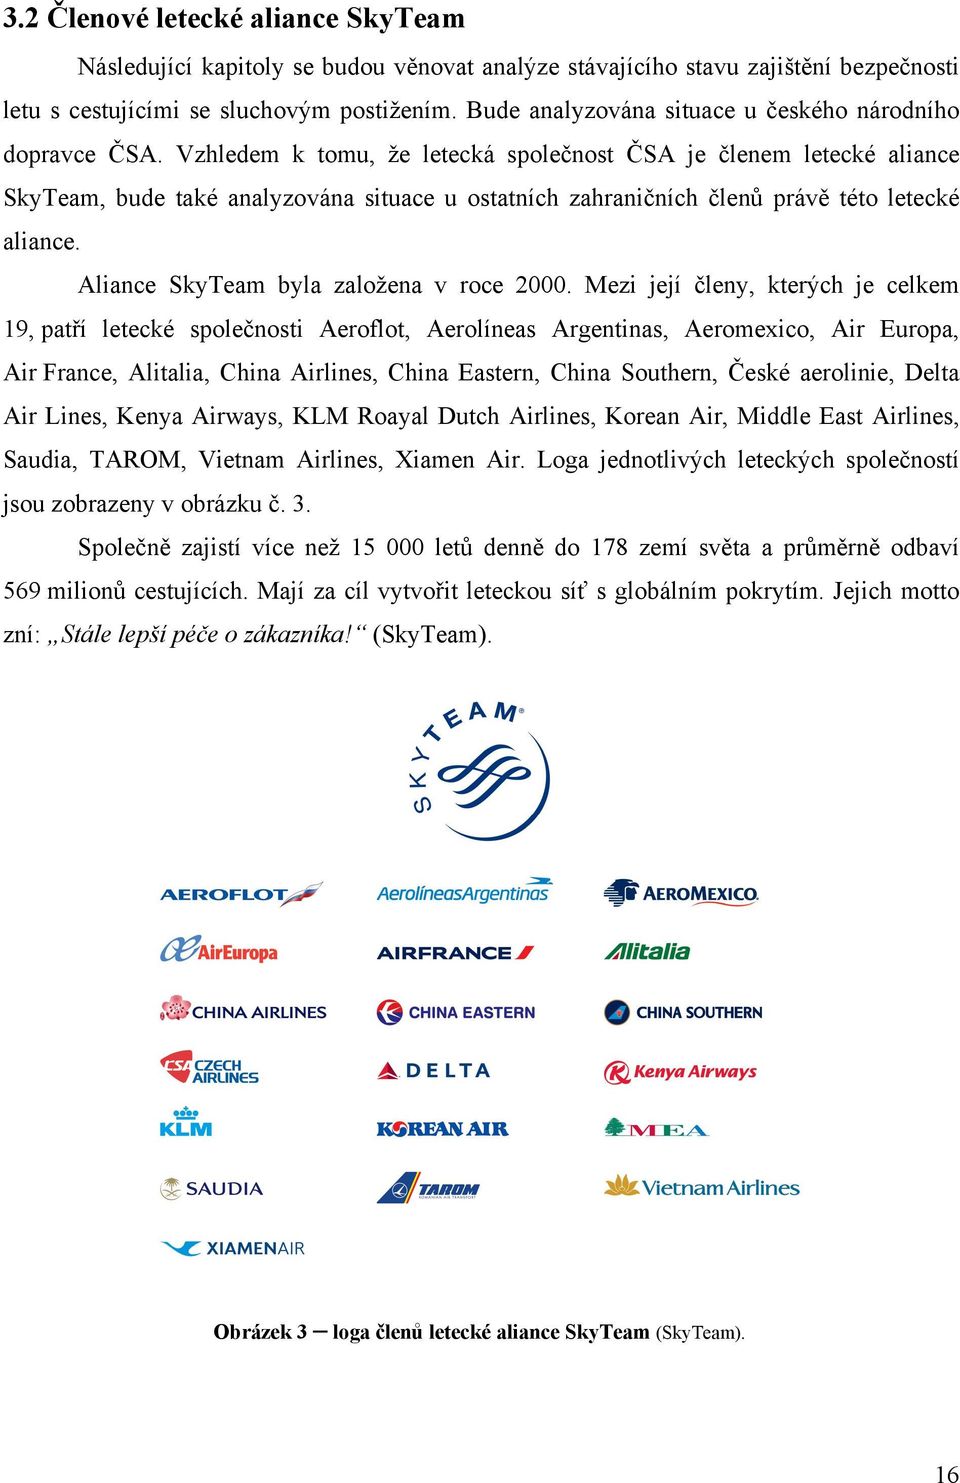 Vzhledem k tomu, že letecká společnost ČSA je členem letecké aliance SkyTeam, bude také analyzována situace u ostatních zahraničních členů právě této letecké aliance.